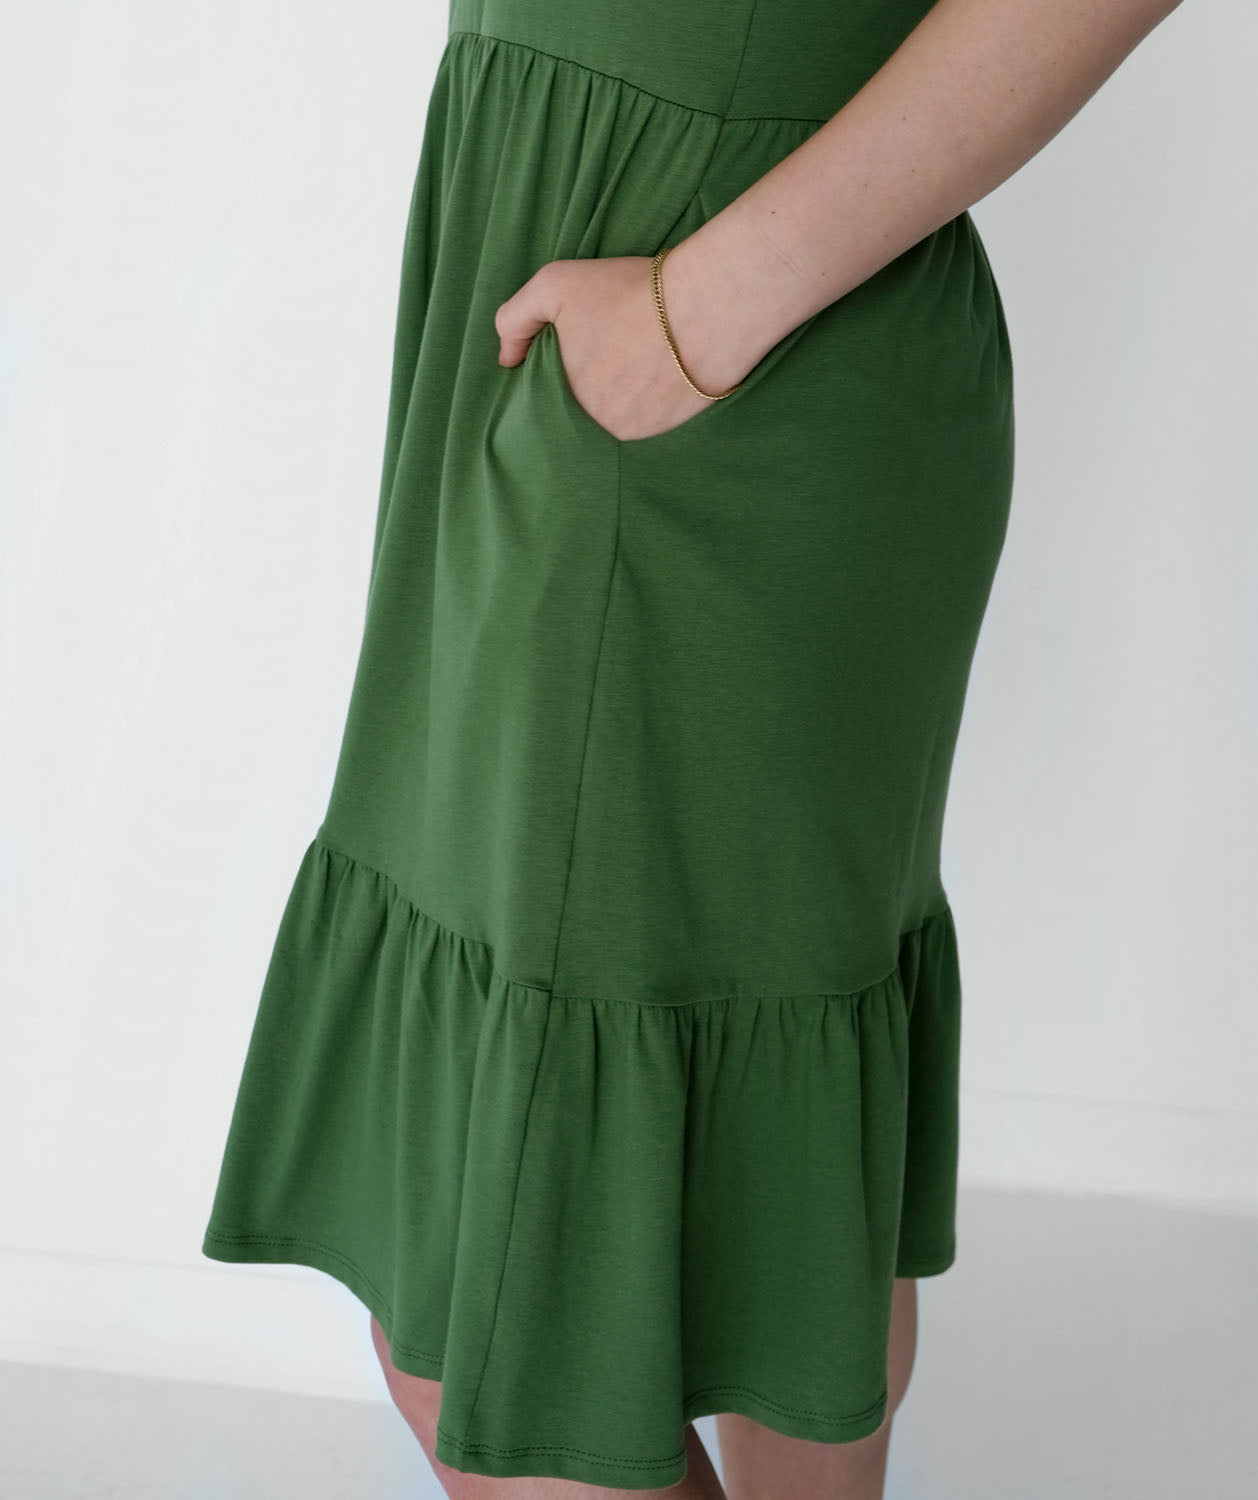 DAWN dress in Vineyard Green